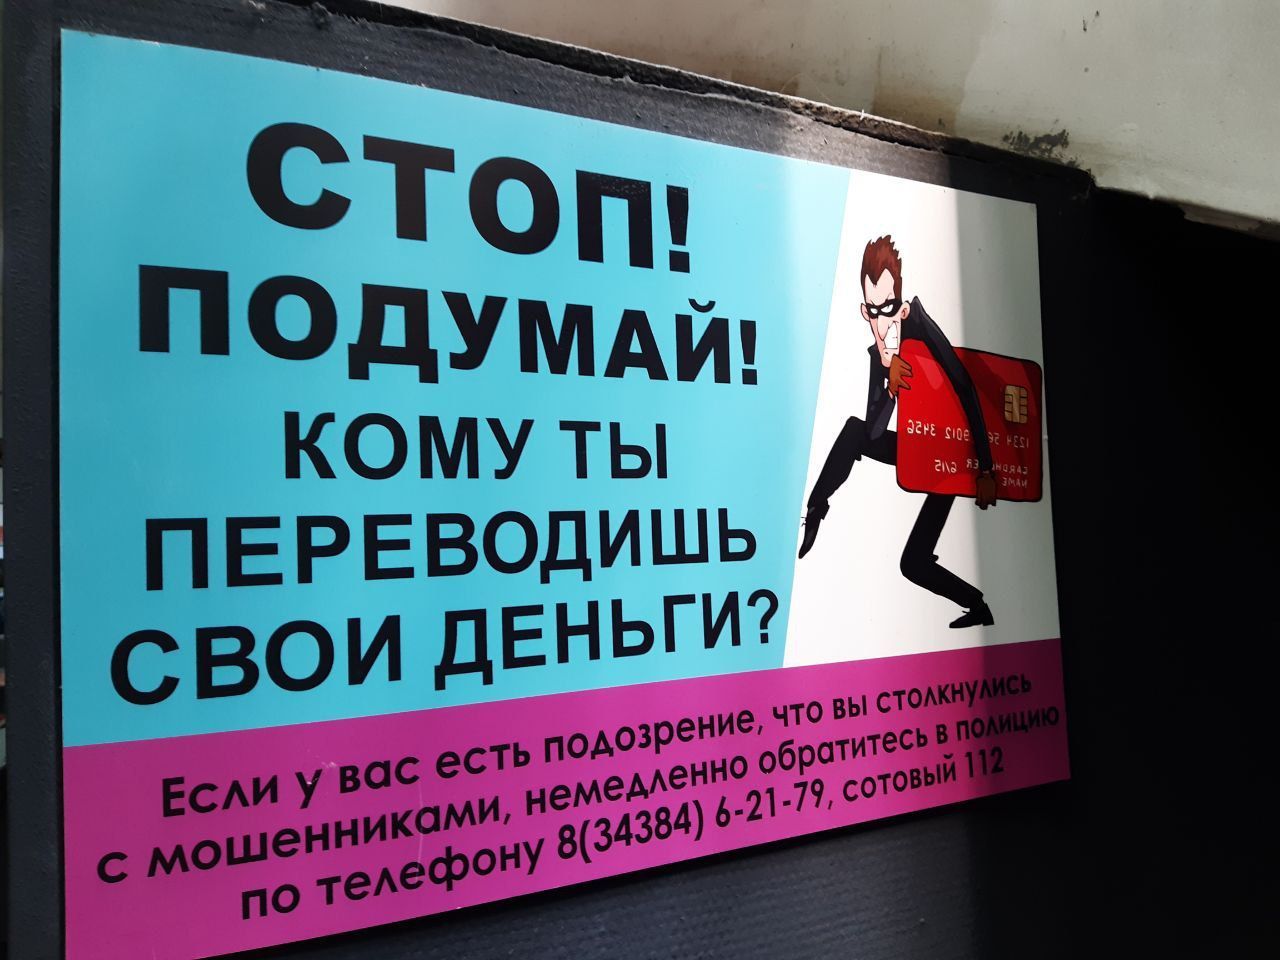 Краснотурьинцев предупреждают о мошенниках, действующих под видом сотрудников ФСБ и полиции